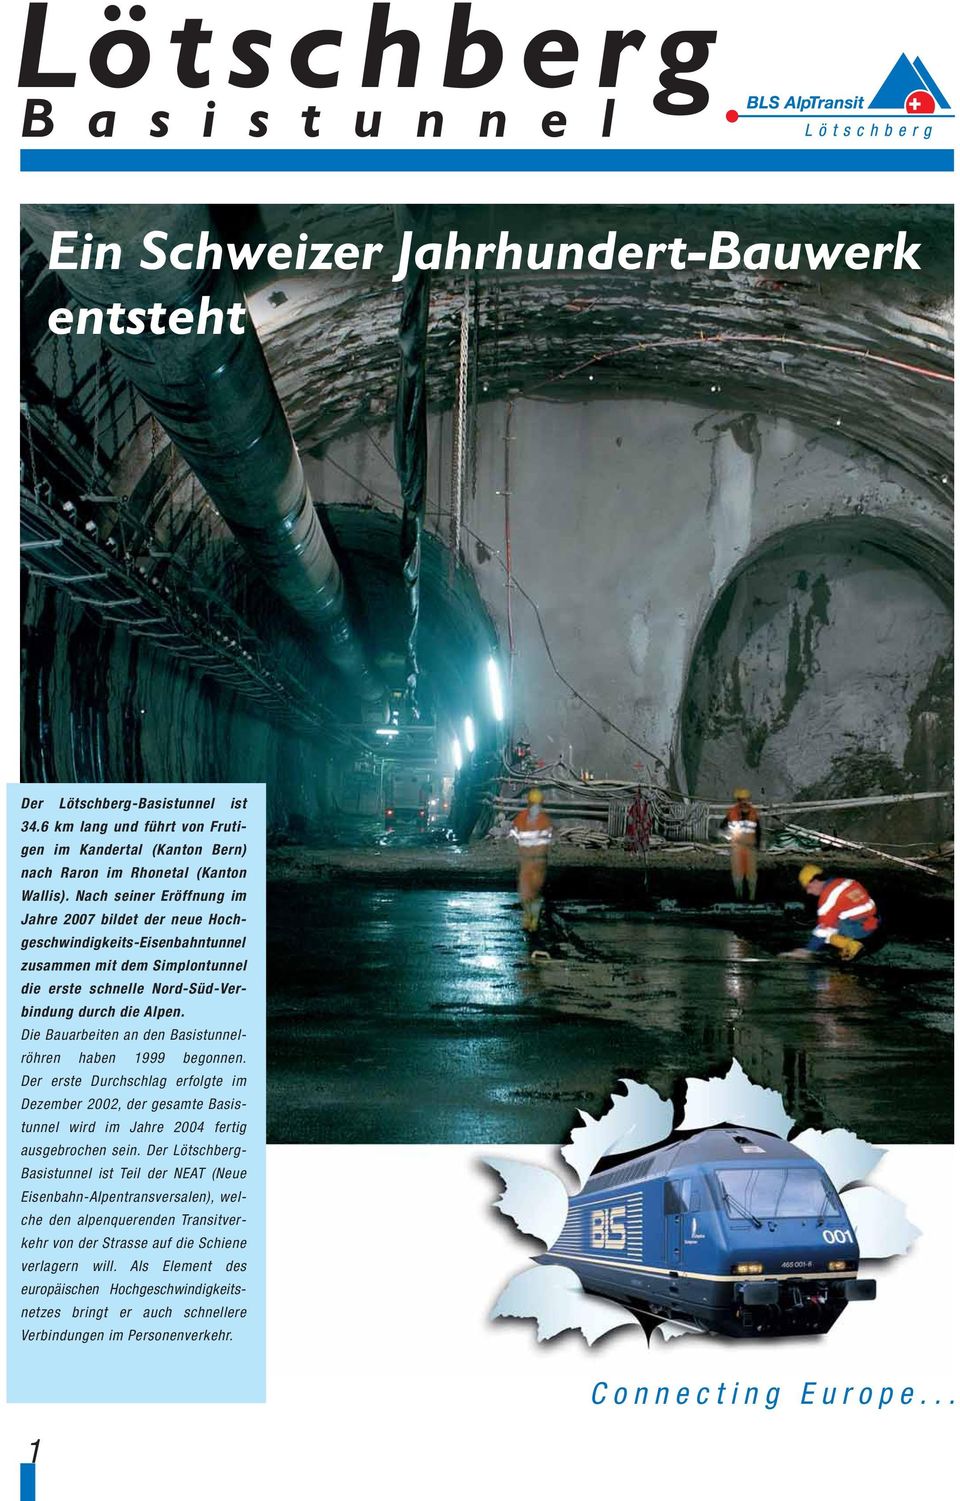 Nach seiner Eröffnung im Jahre 2007 bildet der neue Hochgeschwindigkeits-Eisenbahntunnel zusammen mit dem Simplontunnel die erste schnelle Nord-Süd-Verbindung durch die Alpen.